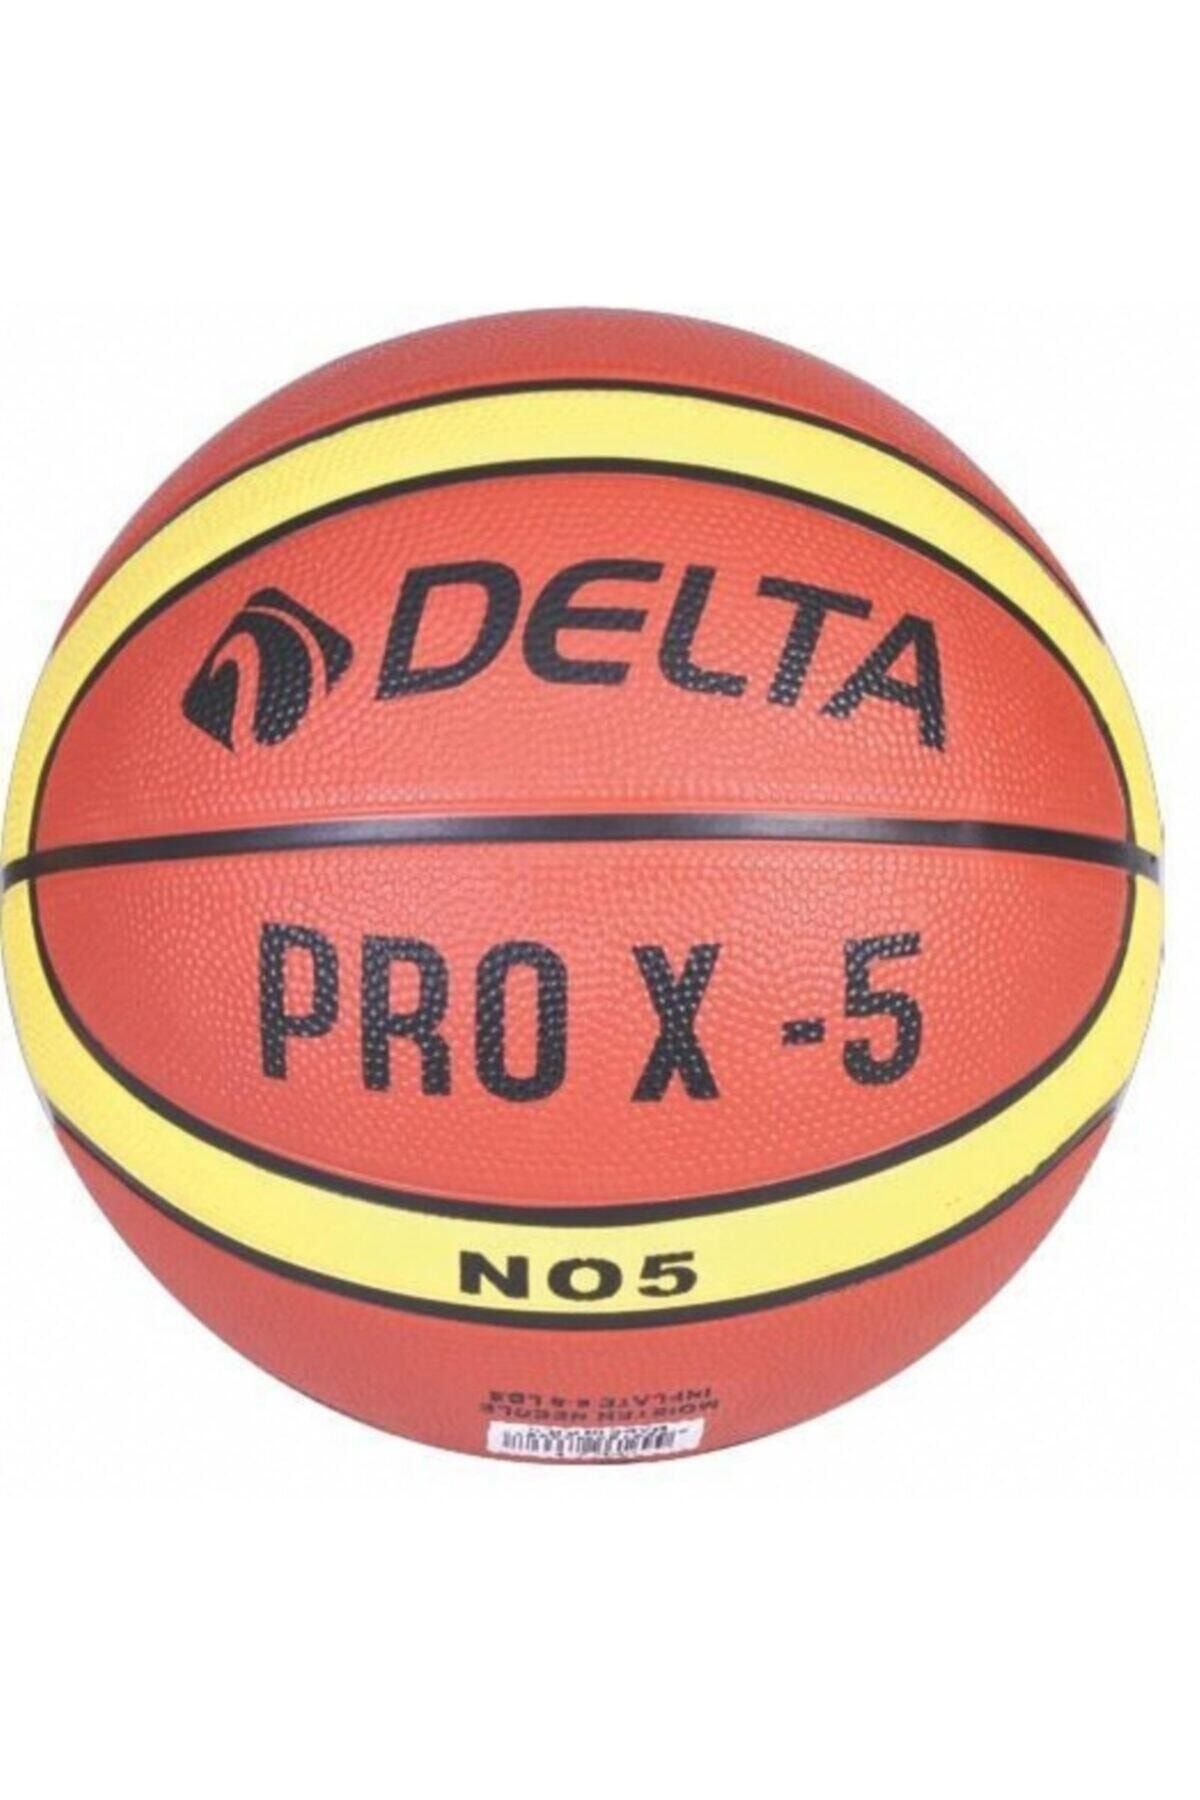 Delta Pro X Basketbol Topu Basket Topu 5 Numara